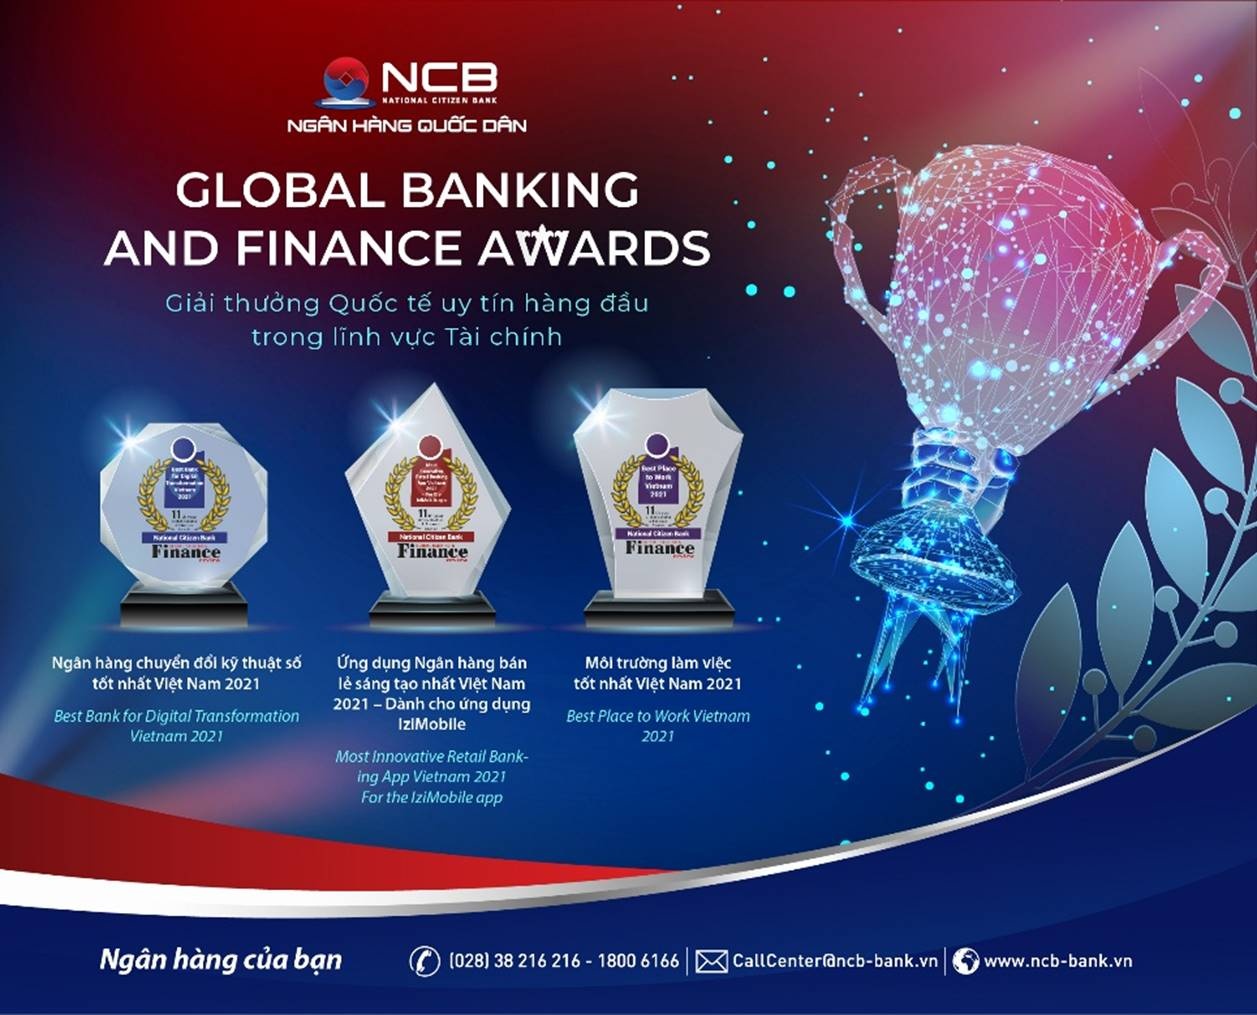 ncb nhan 3 giai thuong quoc te tai global banking finance awards